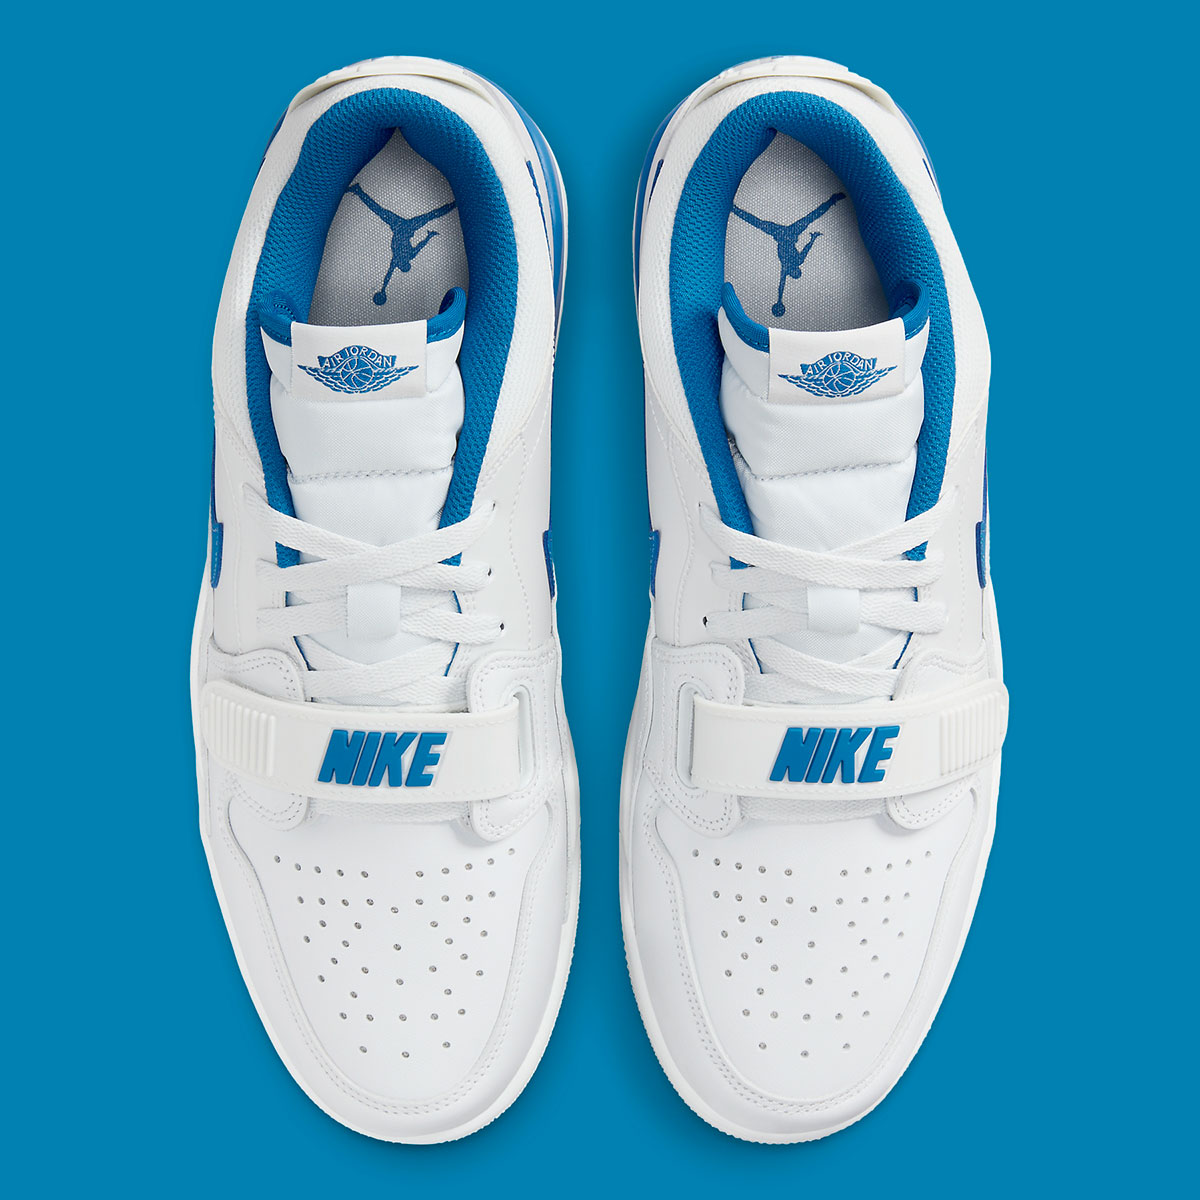 Je kunt ook meer alt Jordan 2 kleurstellingen vinden in onze sneakerzoekmachine Military Blue 3